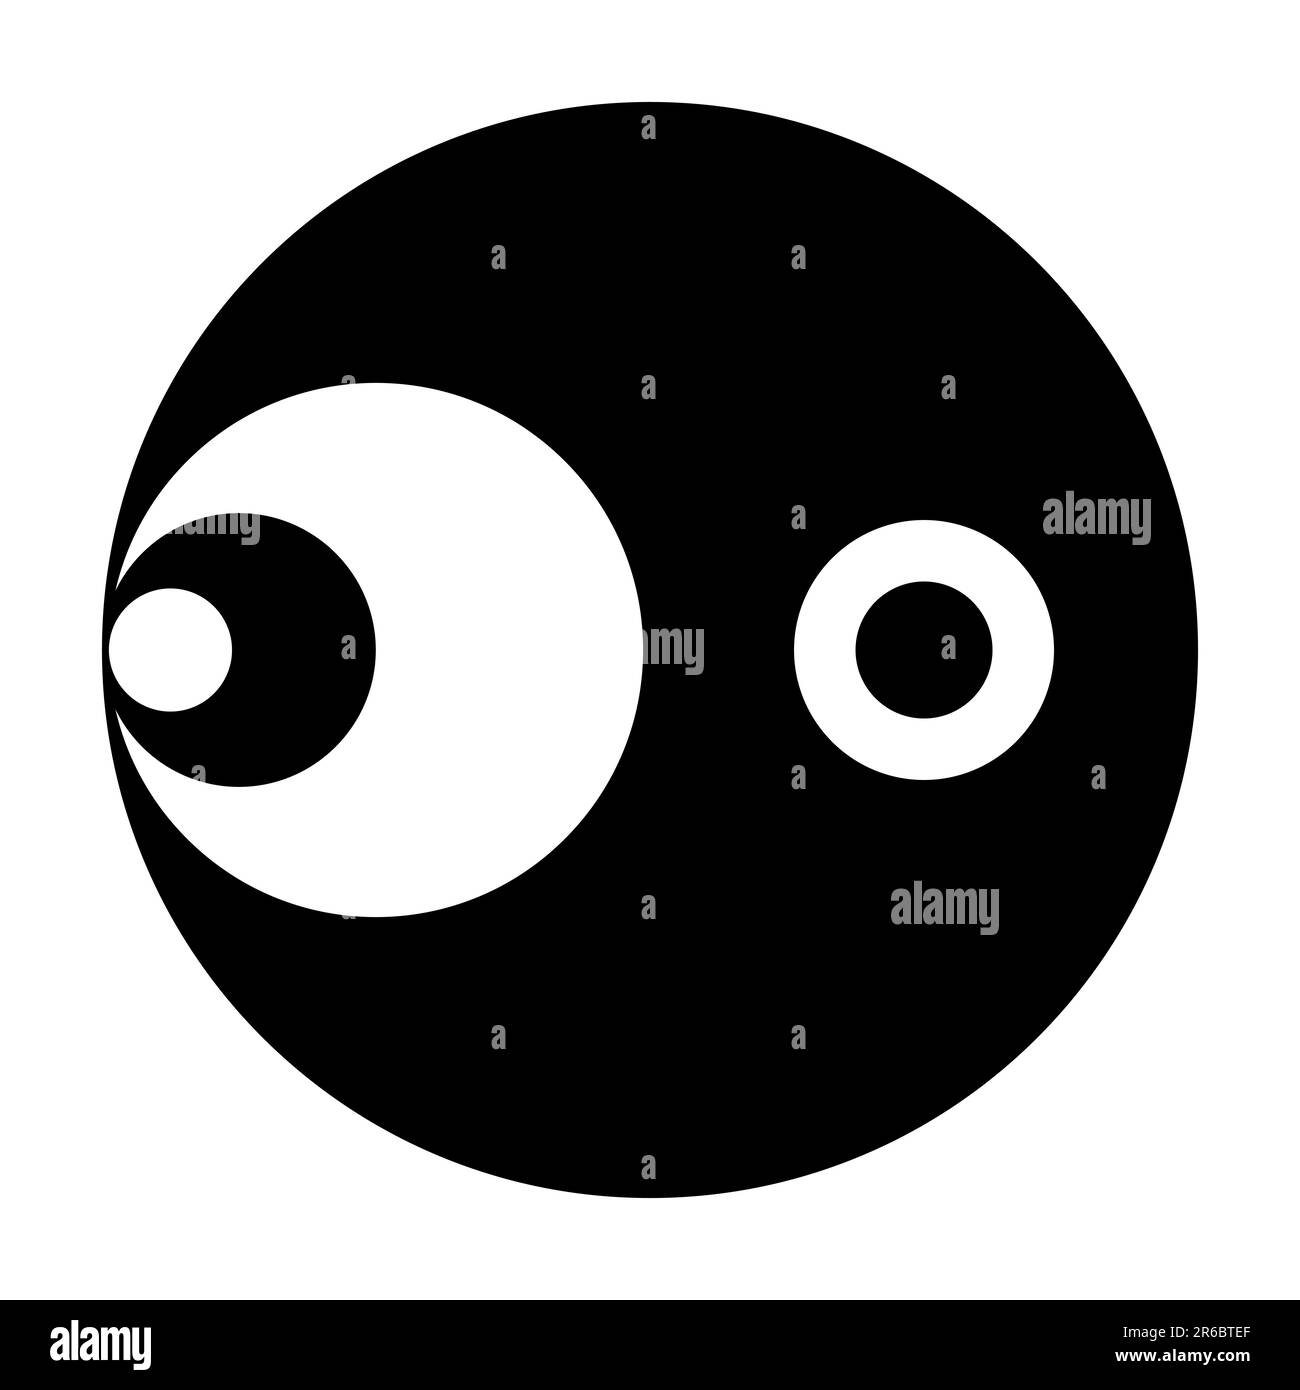 Symbole avec six cercles noirs et blancs, 3 sur le côté gauche, d'un grand cercle noir et 2 centré dans la moitié droite. Modélisé après un cercle de recadrage. Banque D'Images